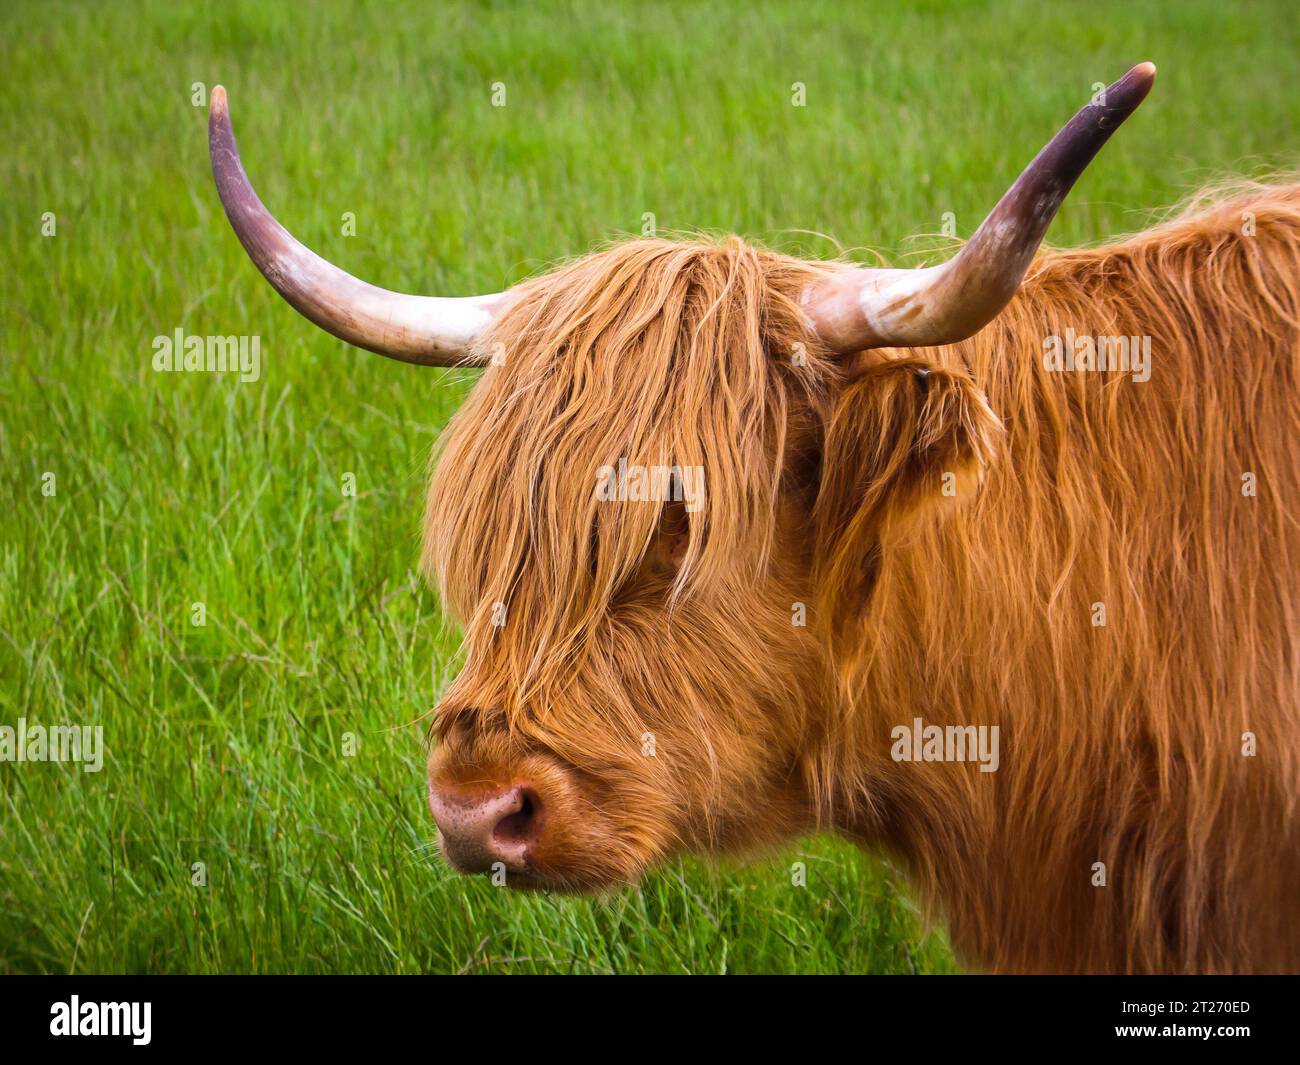 Portrait extérieur d'une vache des hautes terres orange poilue avec des cornes retournées sur un fond herbeux Banque D'Images